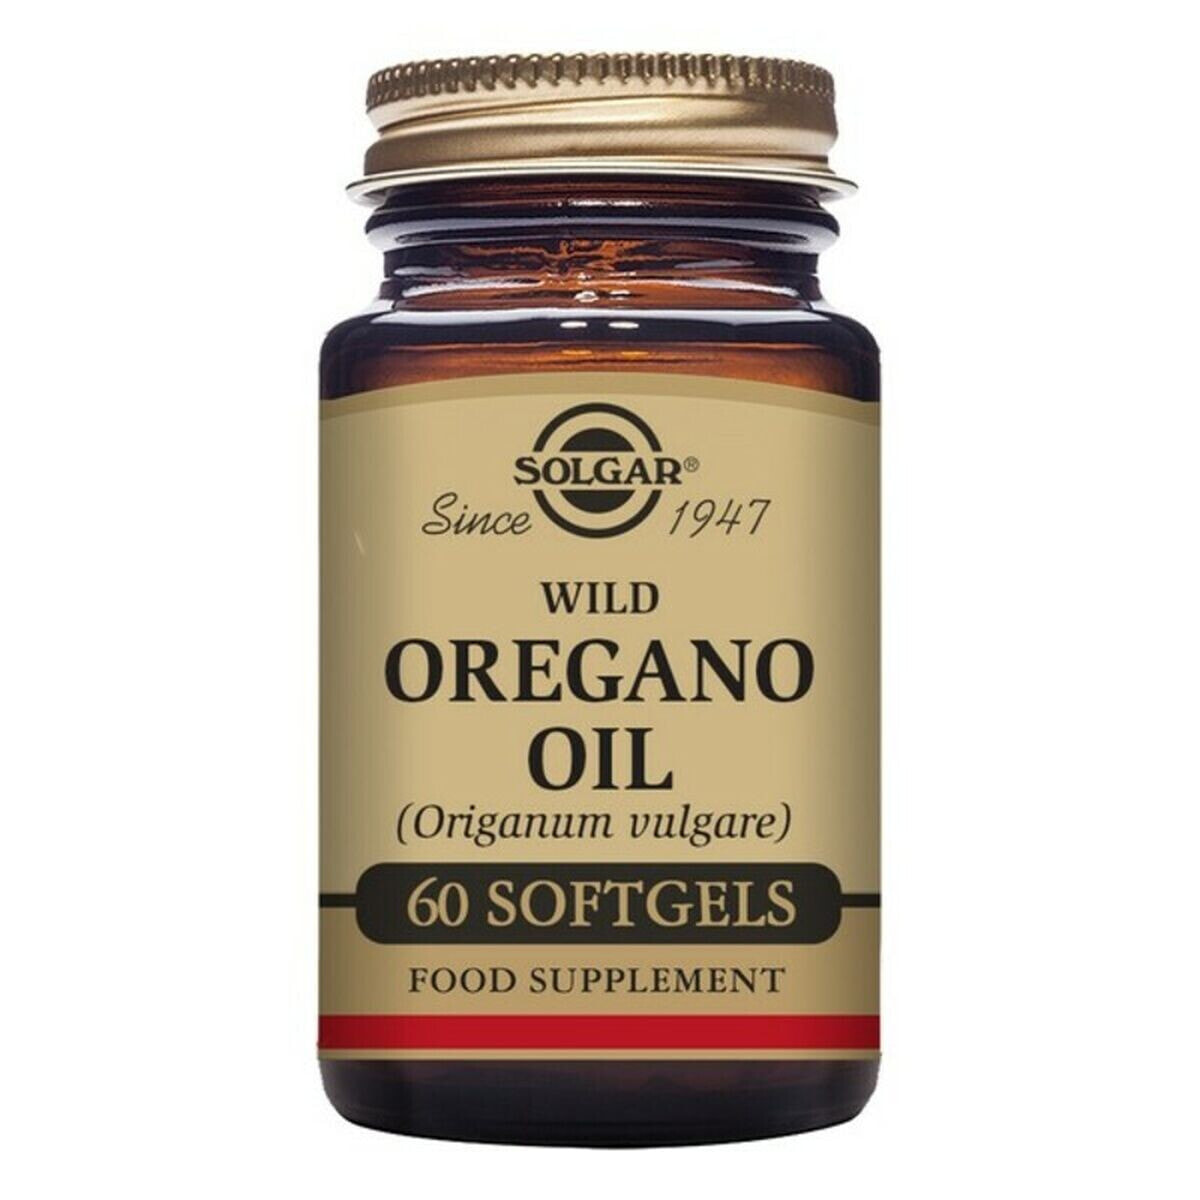 Wild Oregano Oil Solgar Orégano Silvestre